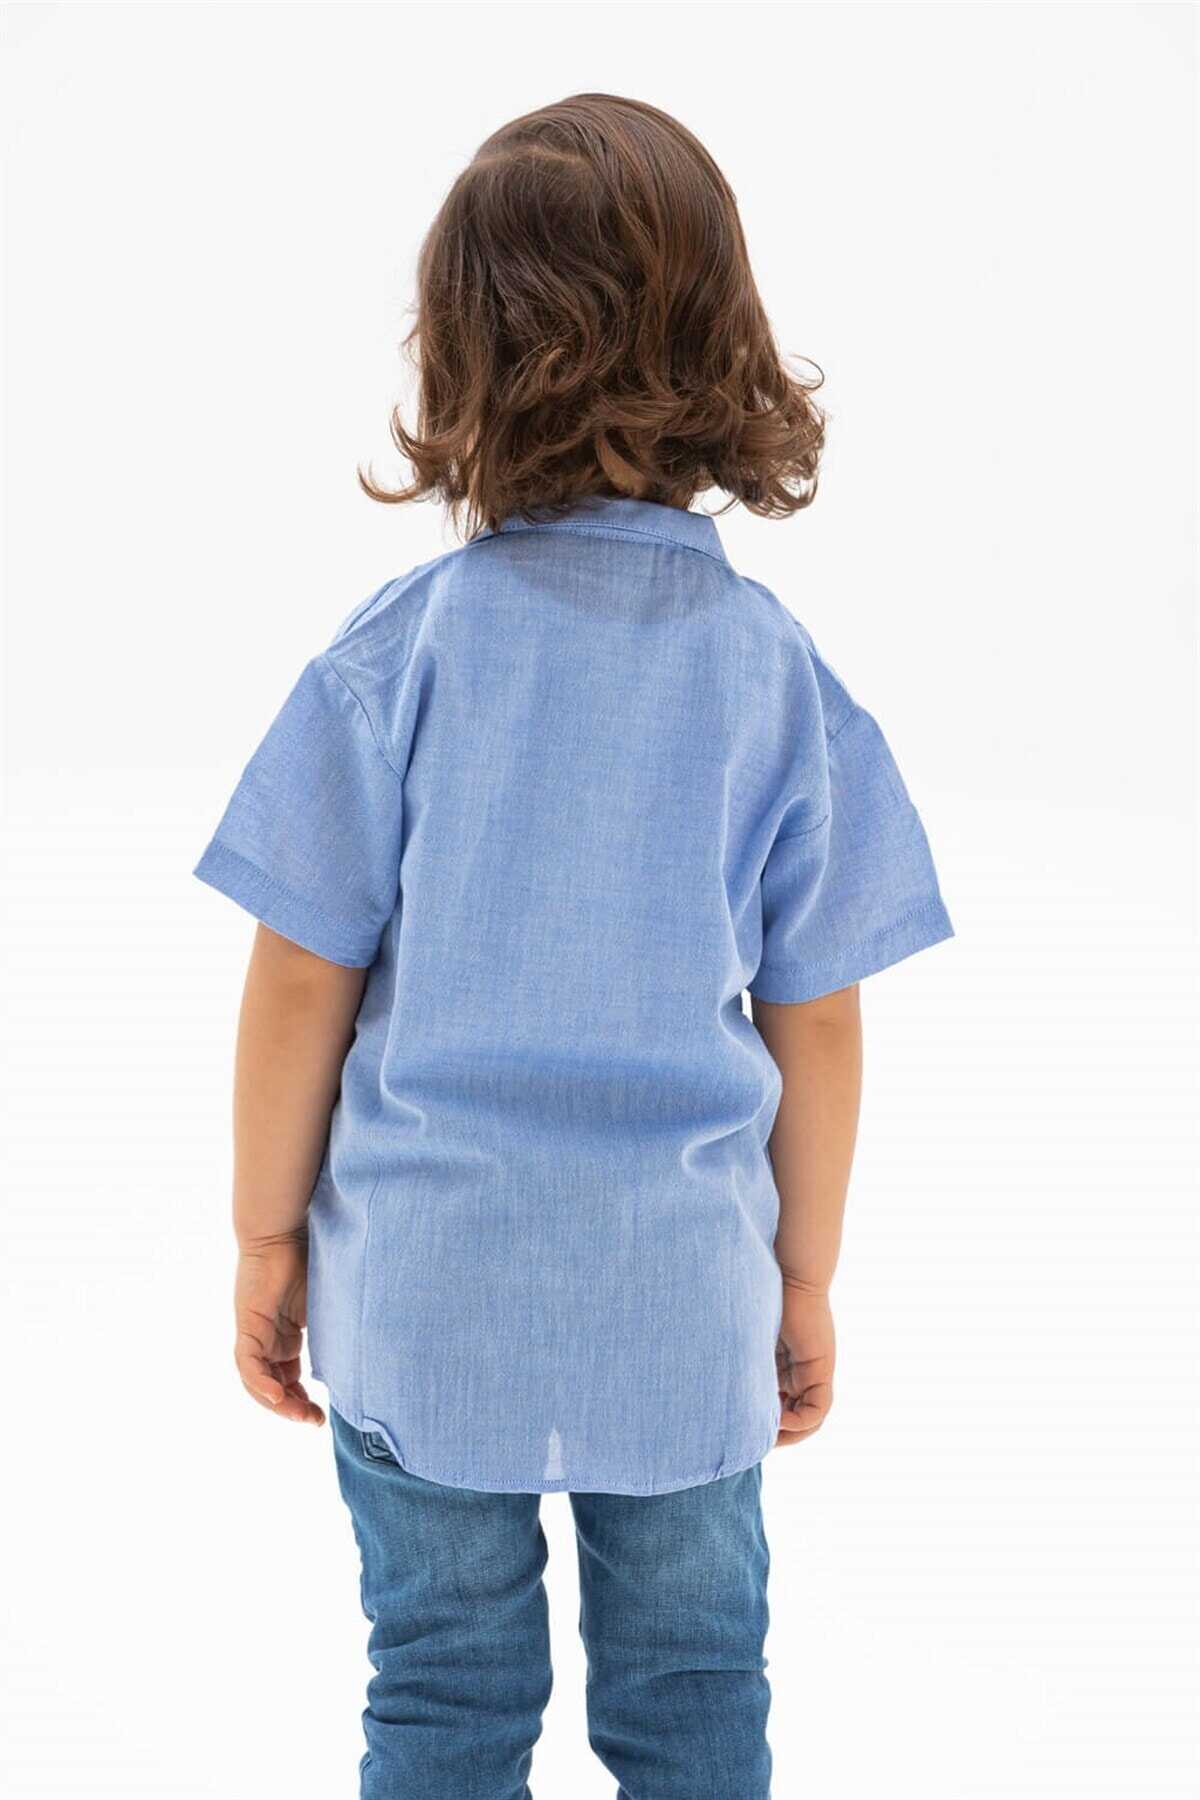 پیراهن بچه گانه پسرانه یقه ترکیبی آستین کوتاه آبی برند Eliş Şile Bezi